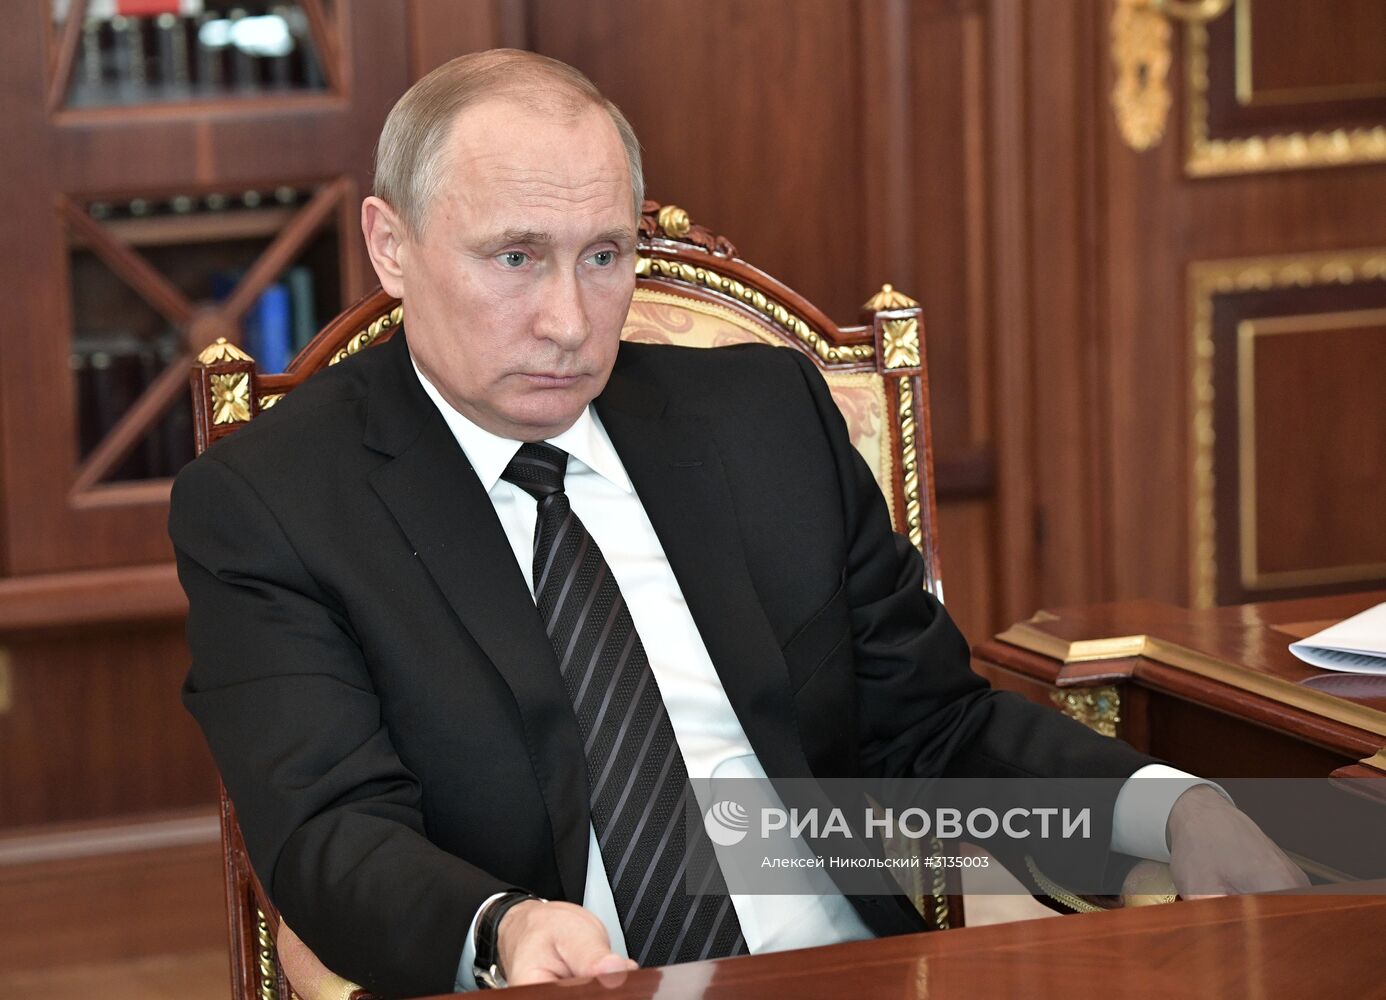 Президент РФ В. Путин встретился с главой Роснефти И. Сечиным